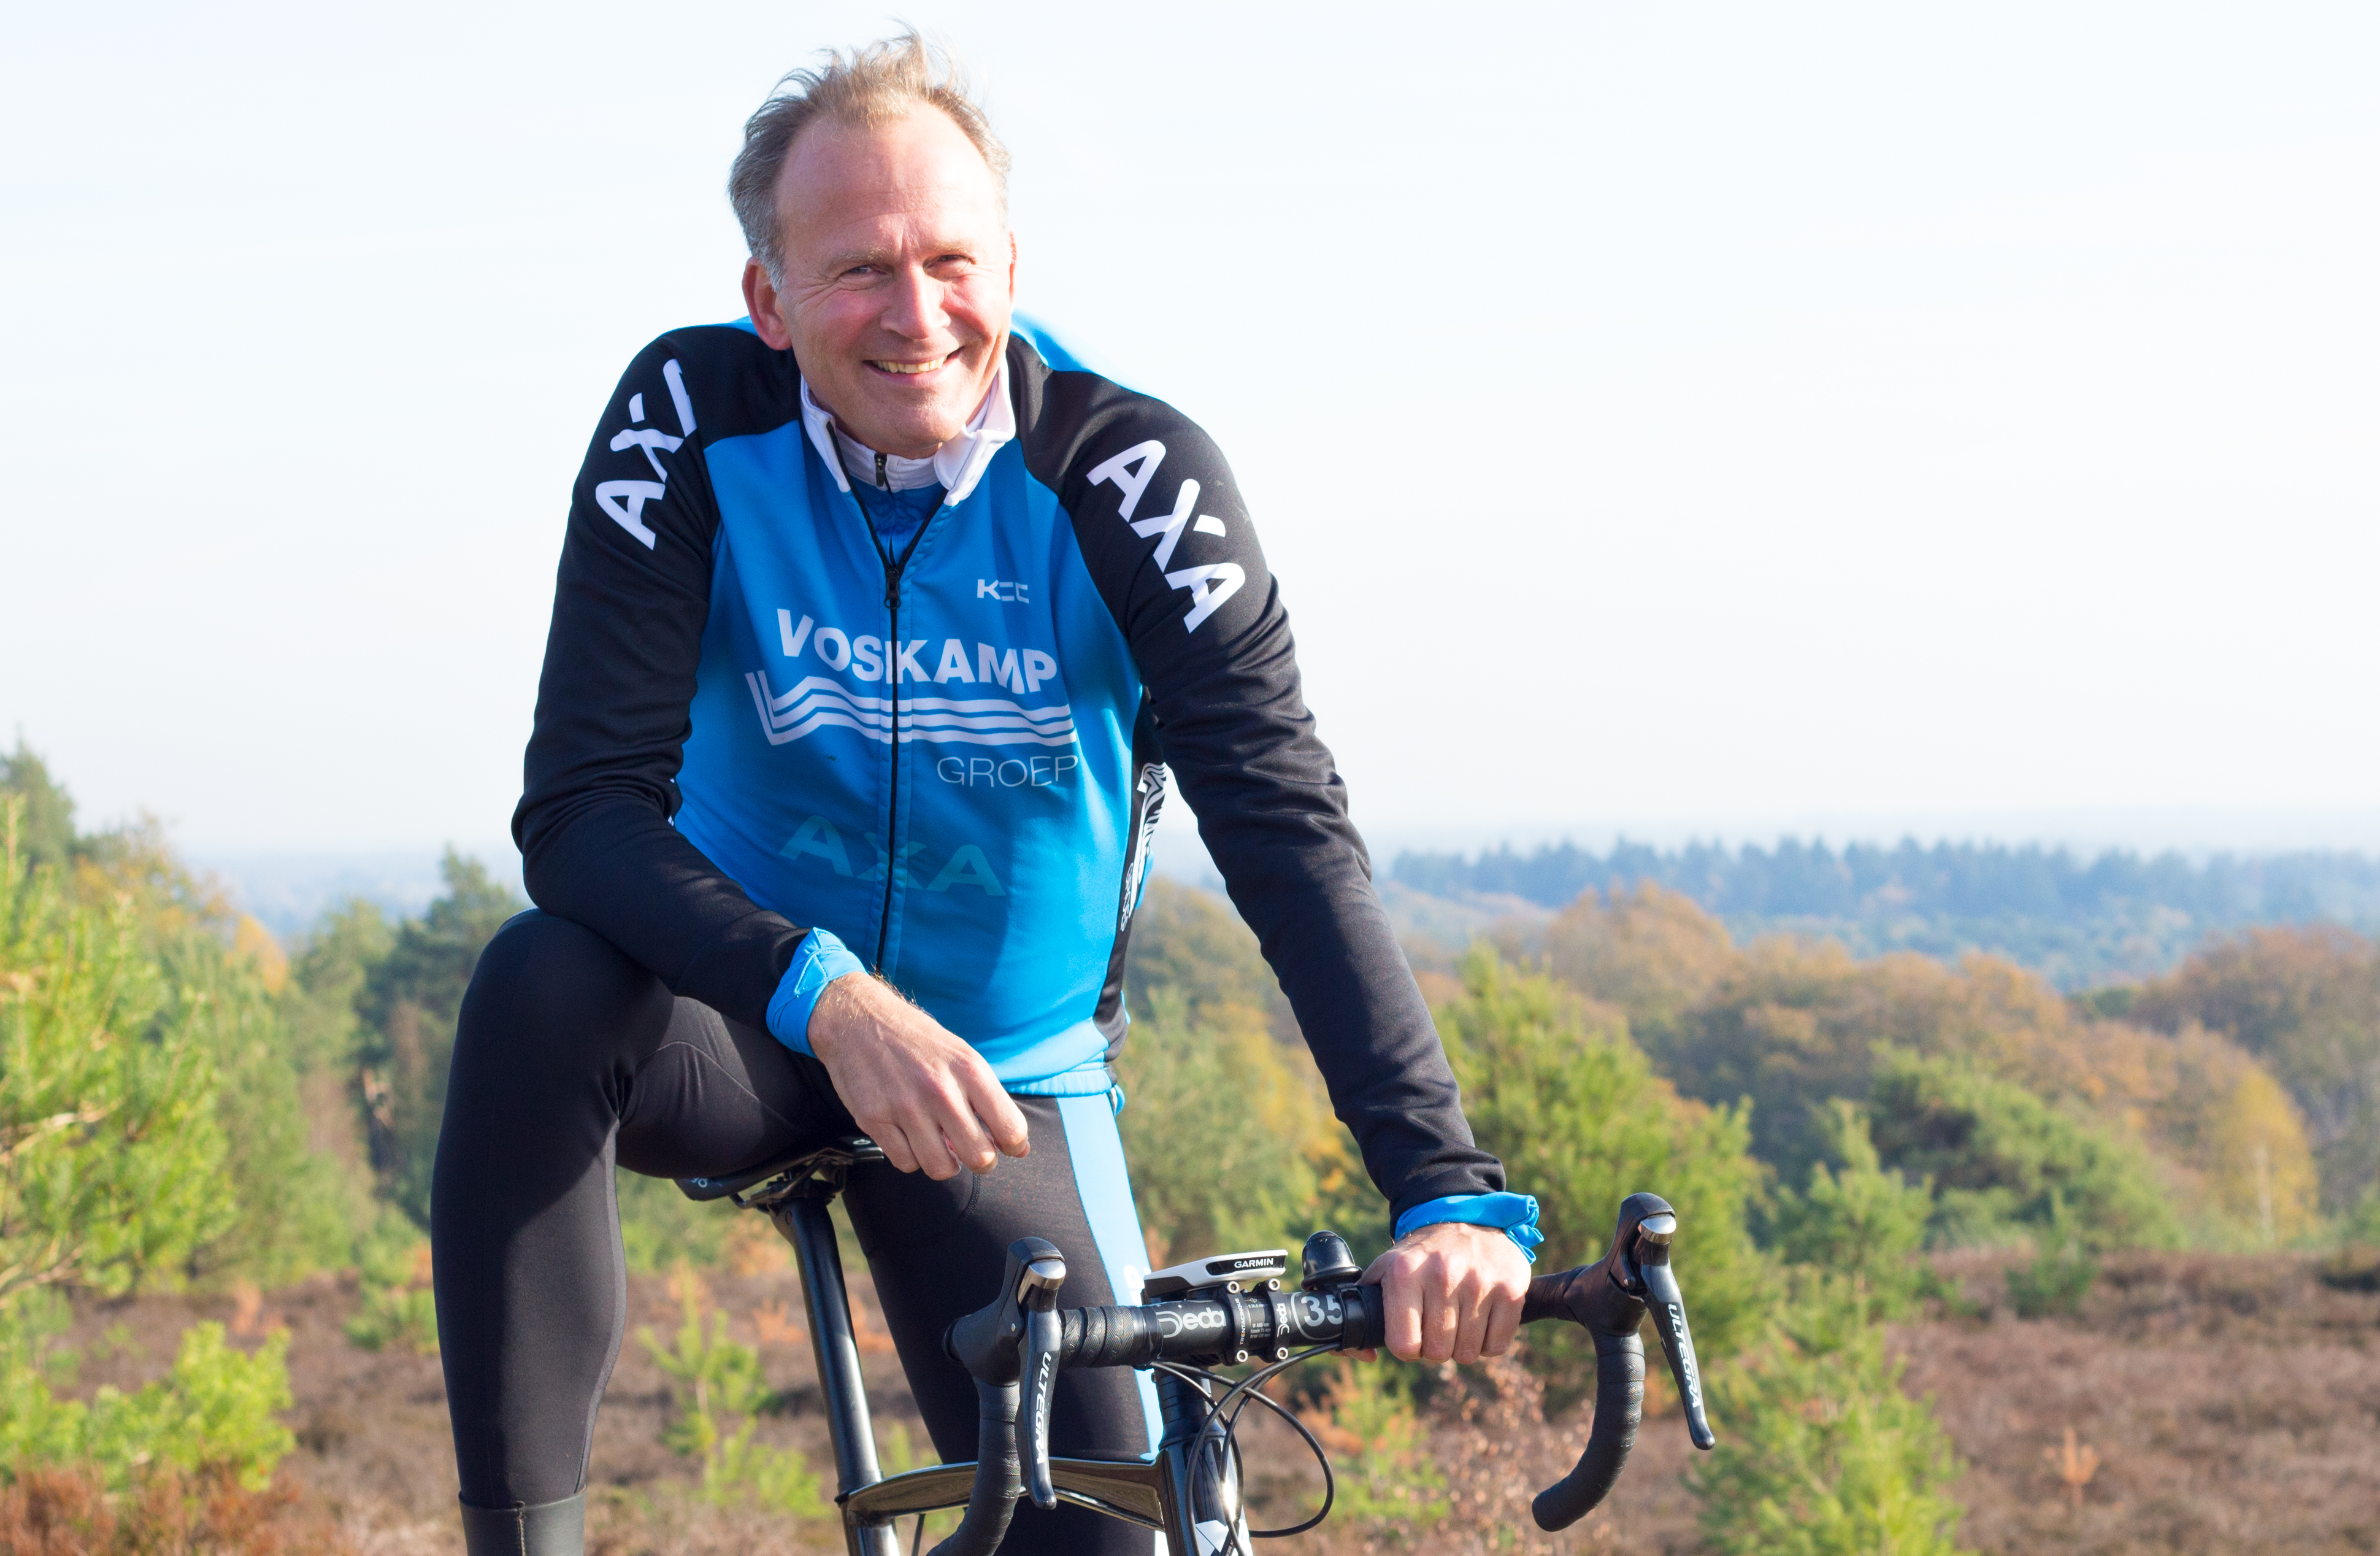 Frank Heidanus van Voskamp Groep op de fiets